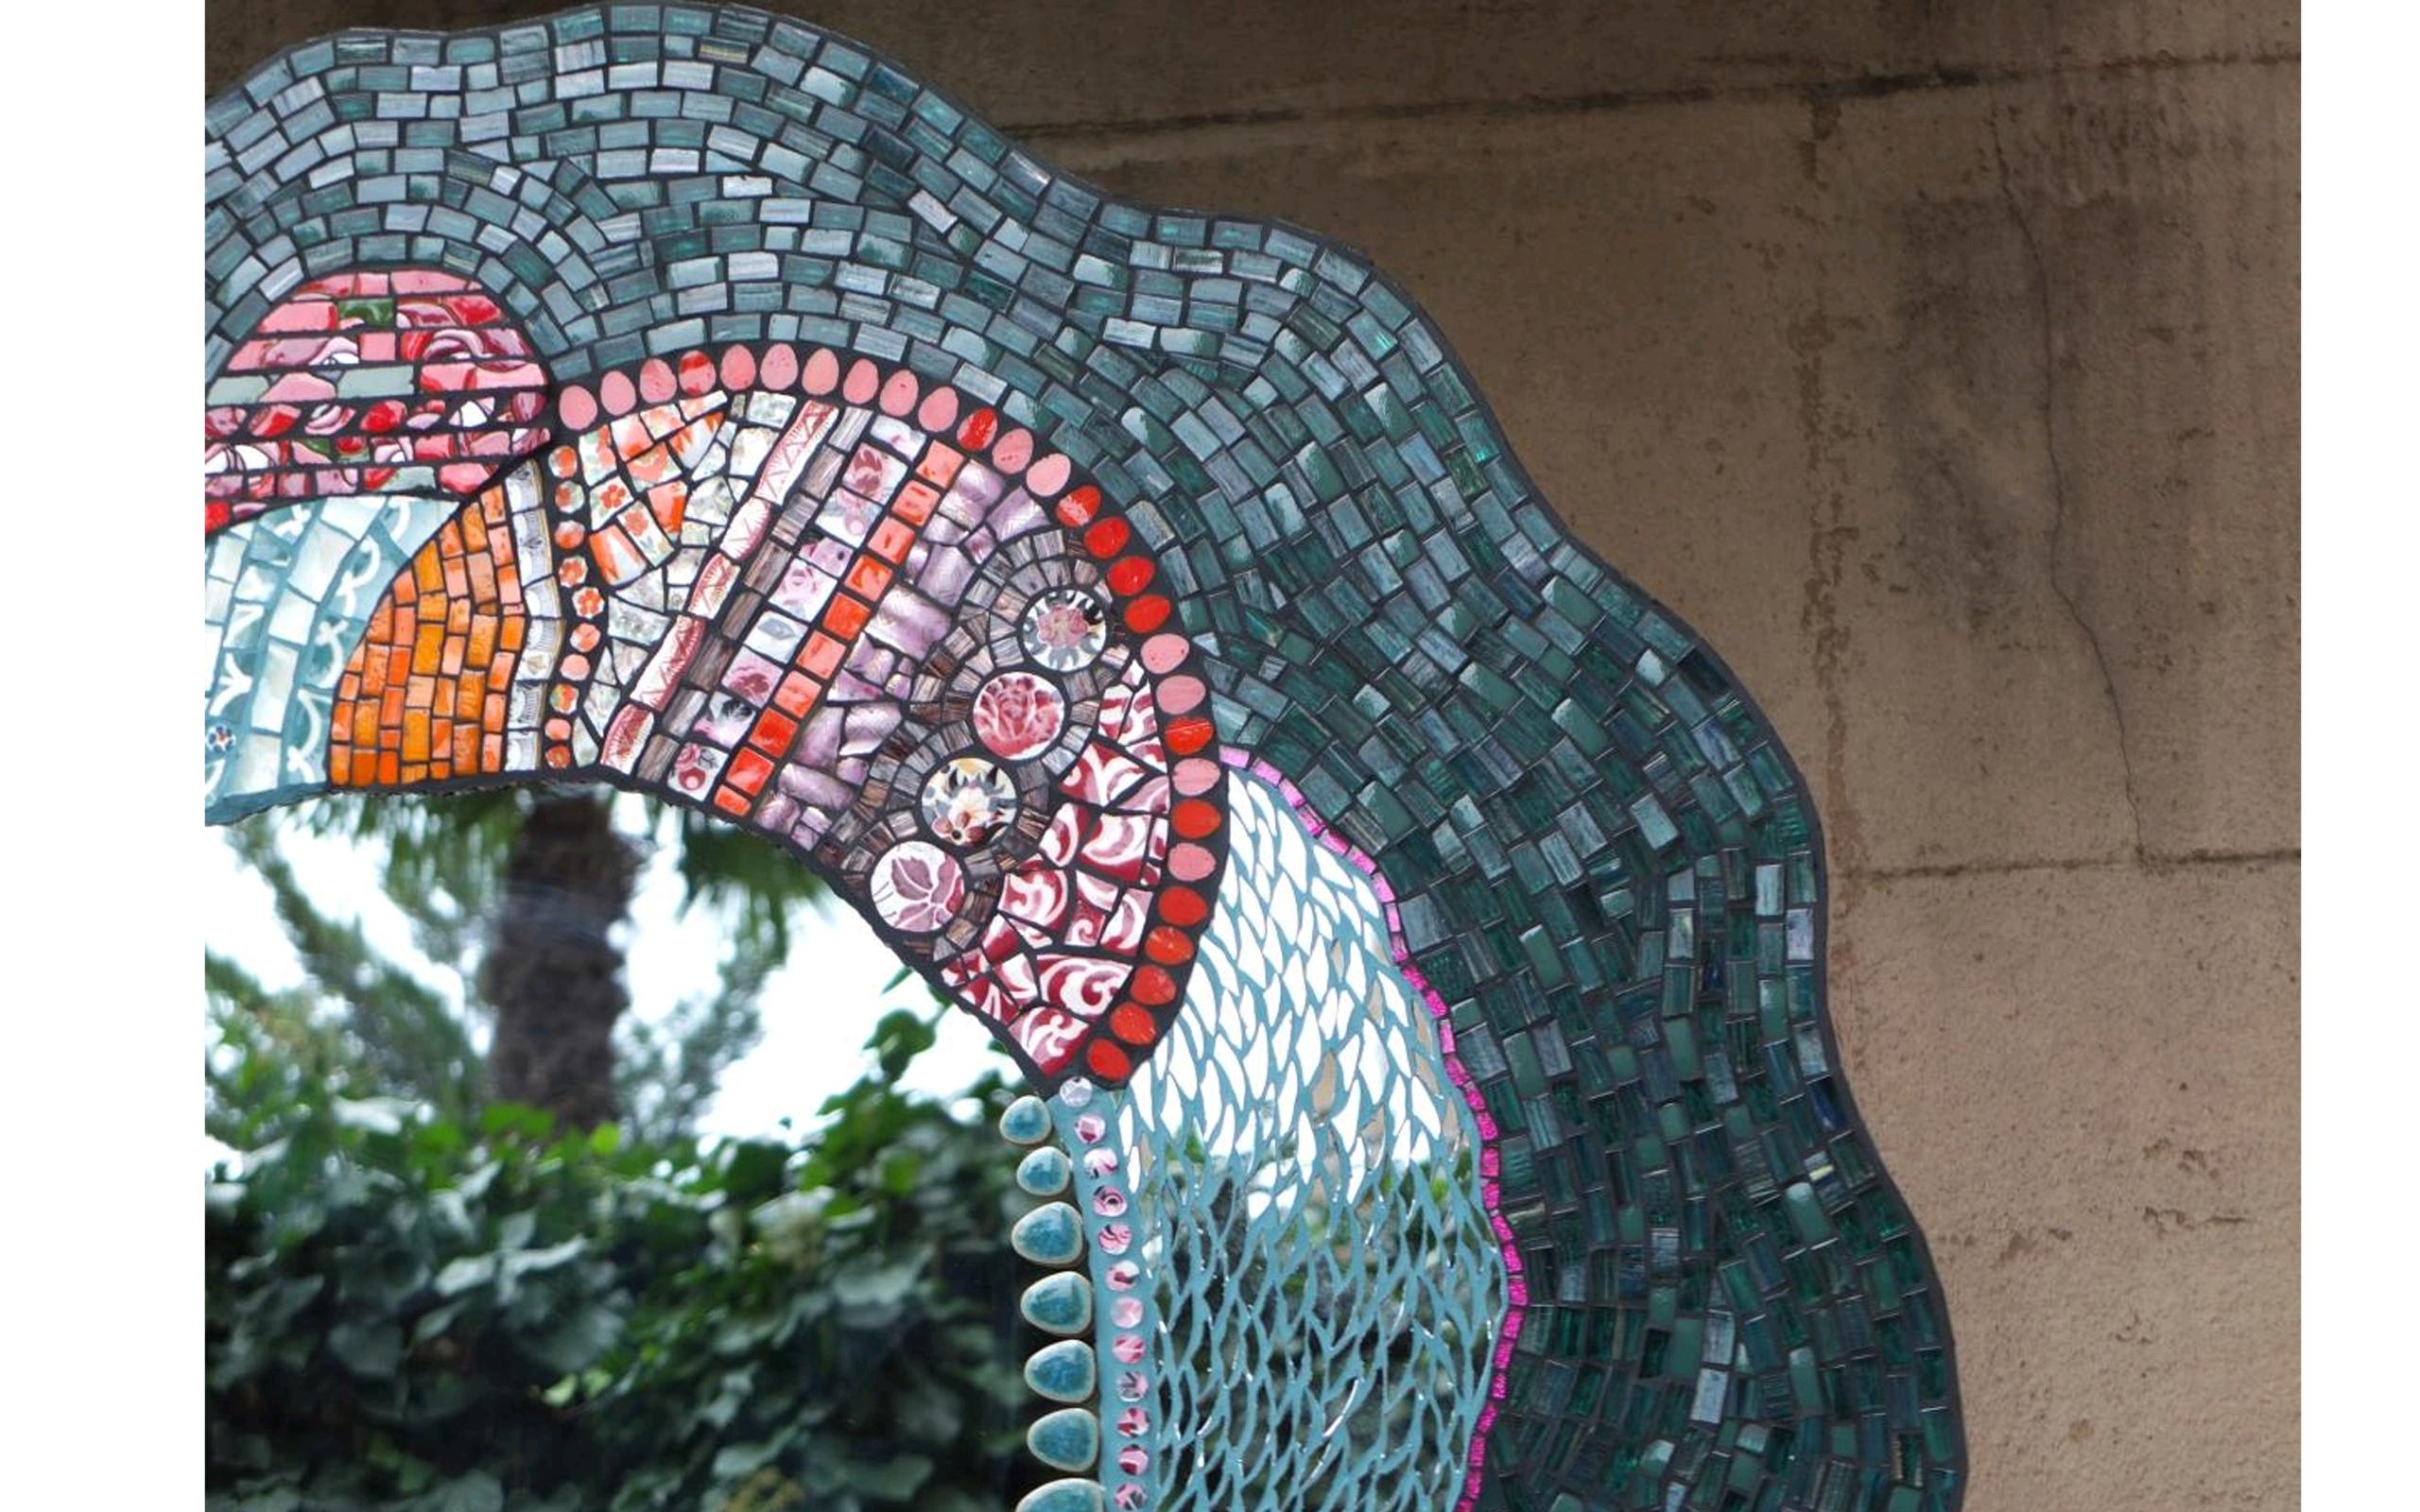 Einzigartiger, atemberaubender Mosaikspiegel, der vom Künstler unter Verwendung von originalen, kleinen, maßgeschneiderten Vintage-Fragmenten aus Keramik, Porzellangeschirr, altem Porzellan, Spiegeln, Glas, etc. geschaffen wurde. All diese